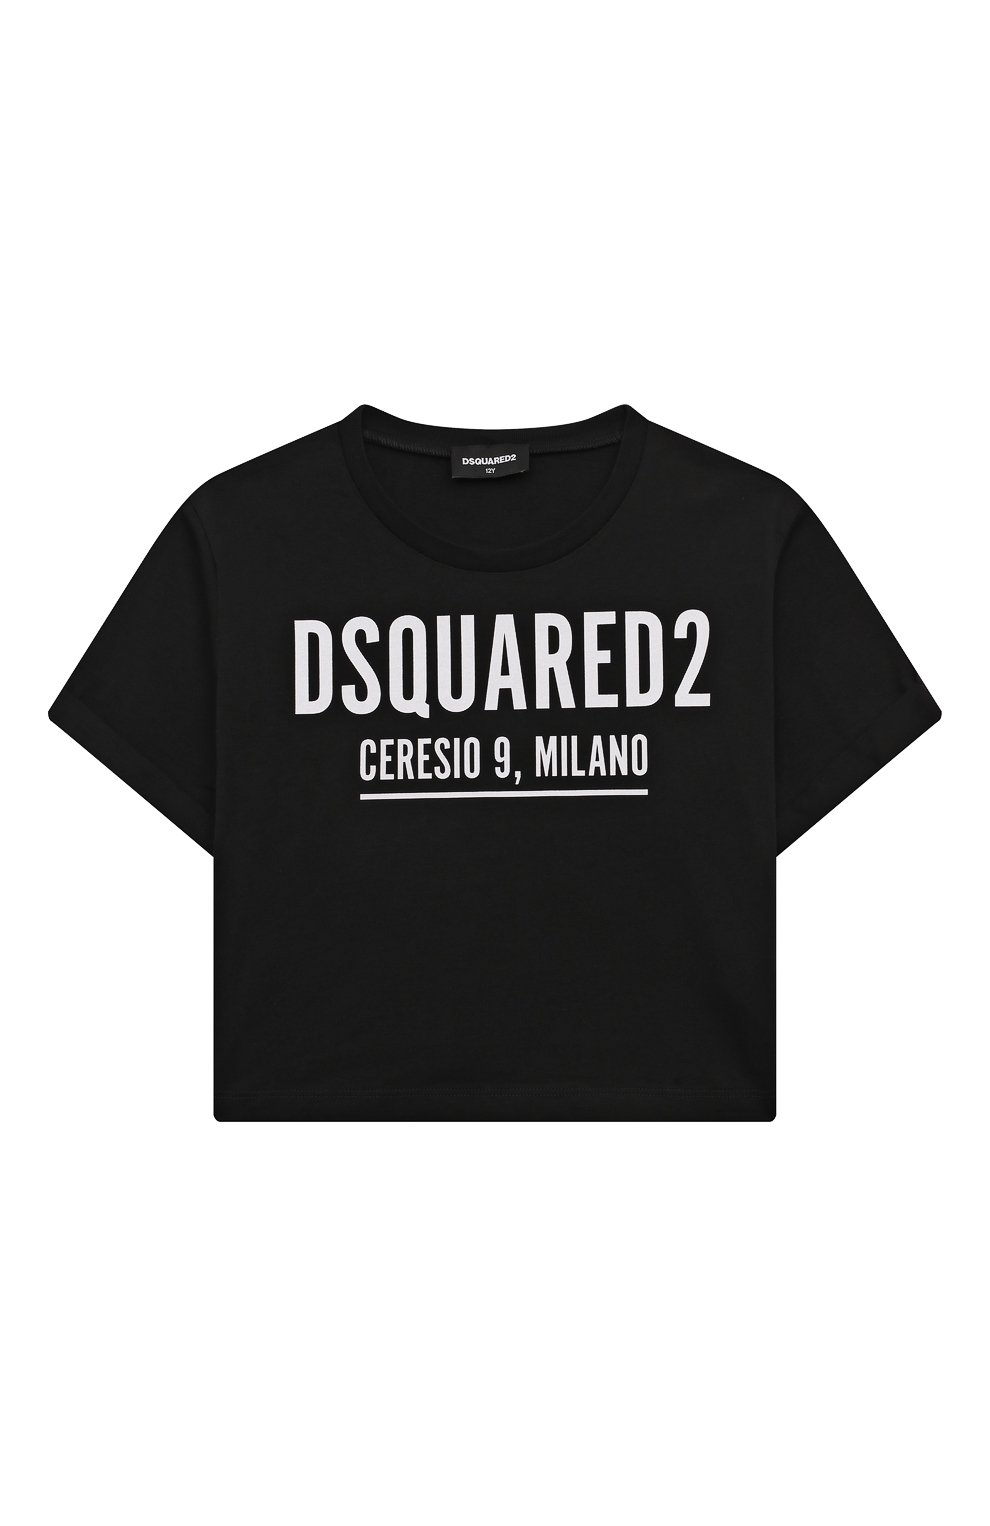 Укороченная футболка Dsquared2